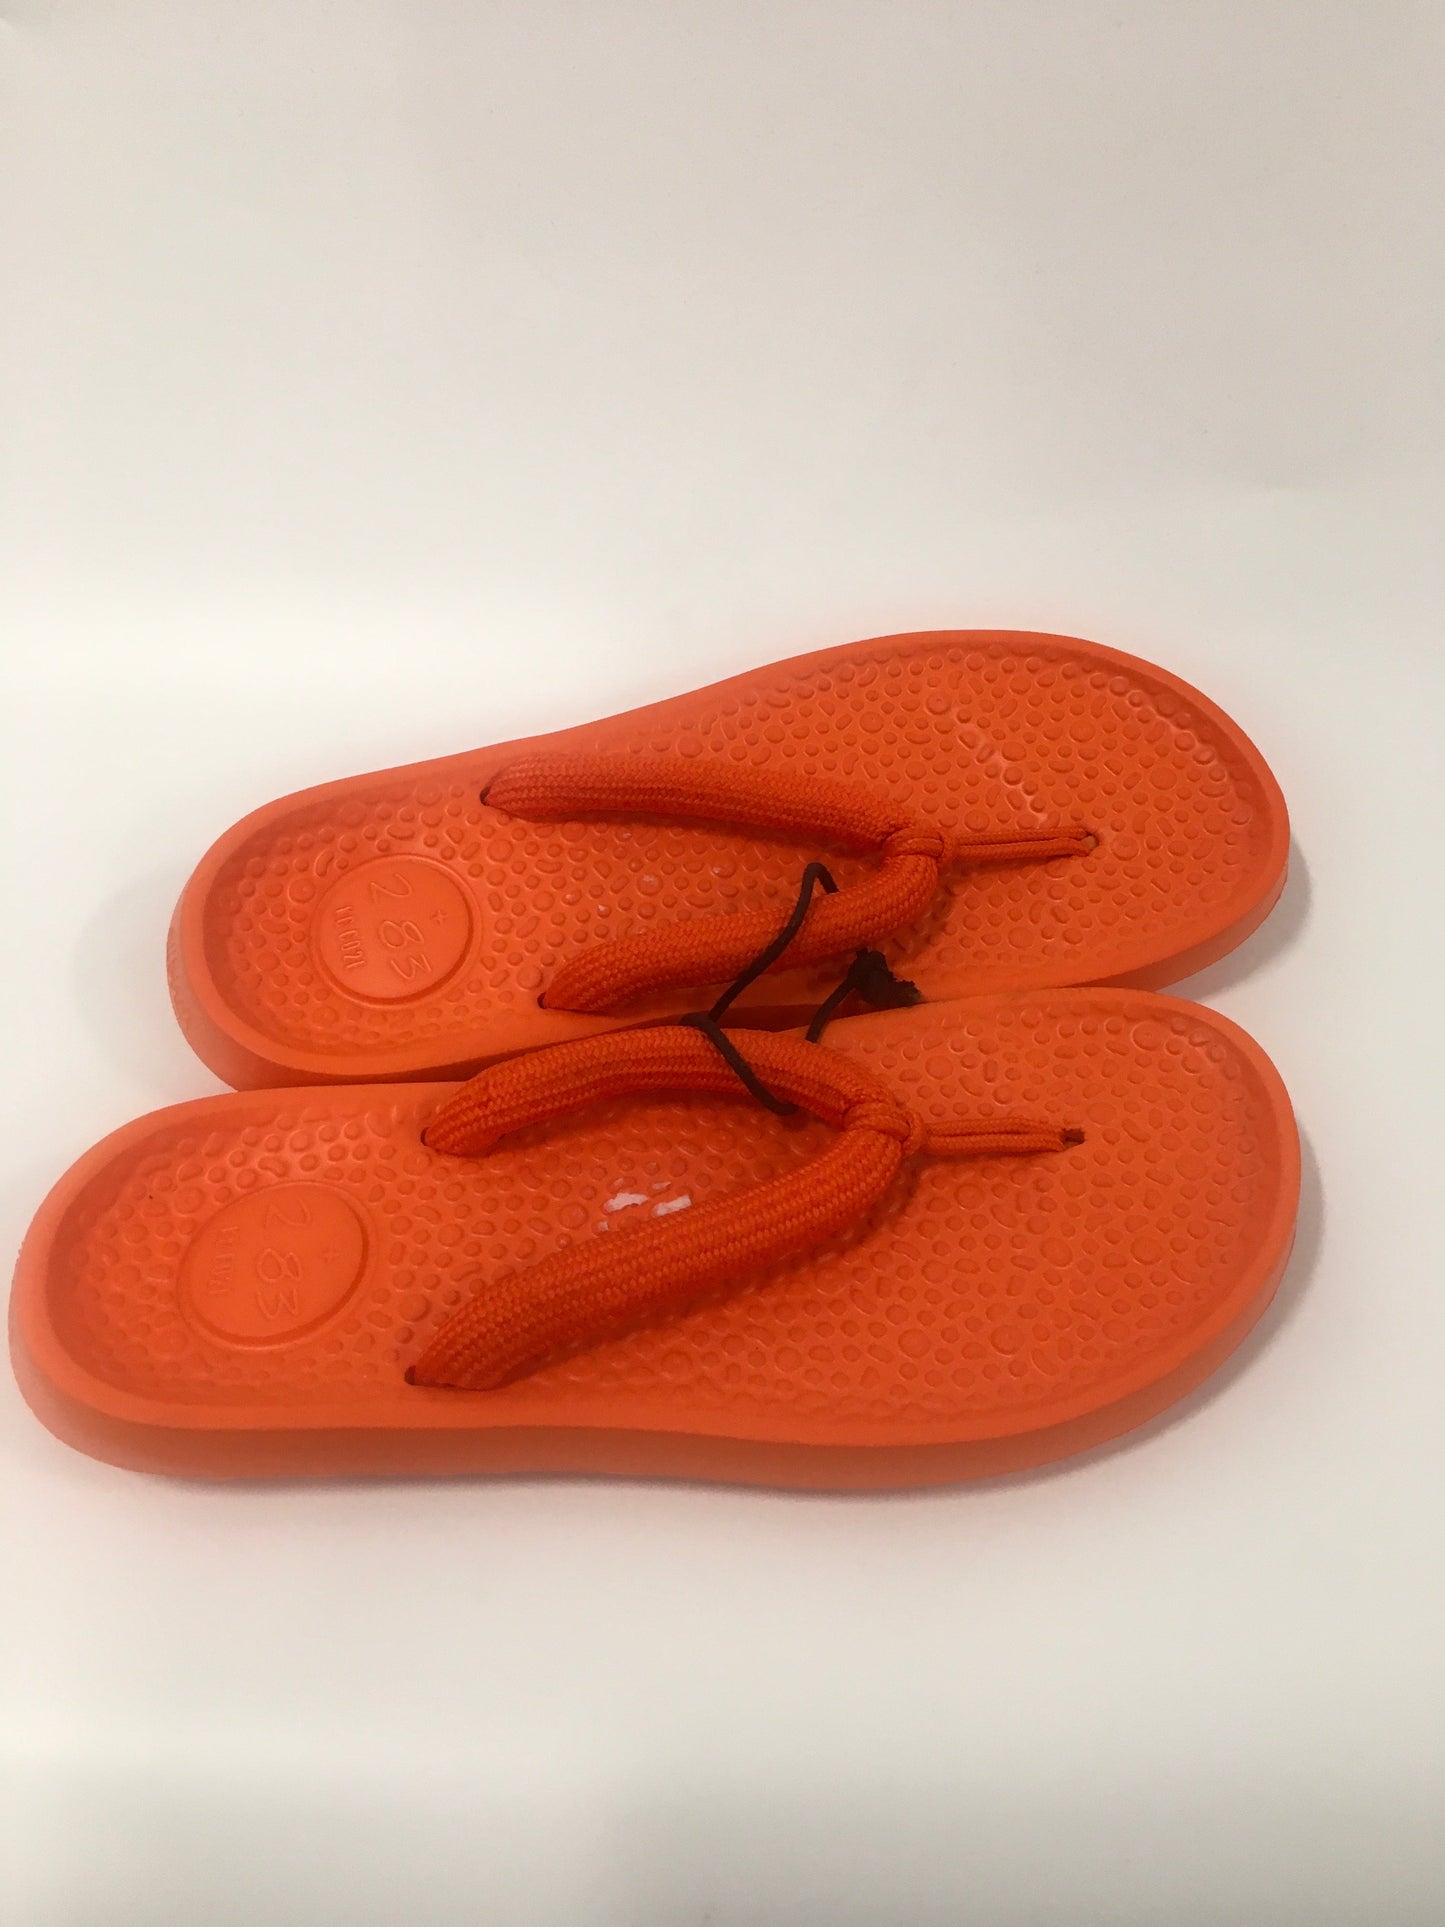 Orange Sandals Flip Flops Allbirds, Size 9